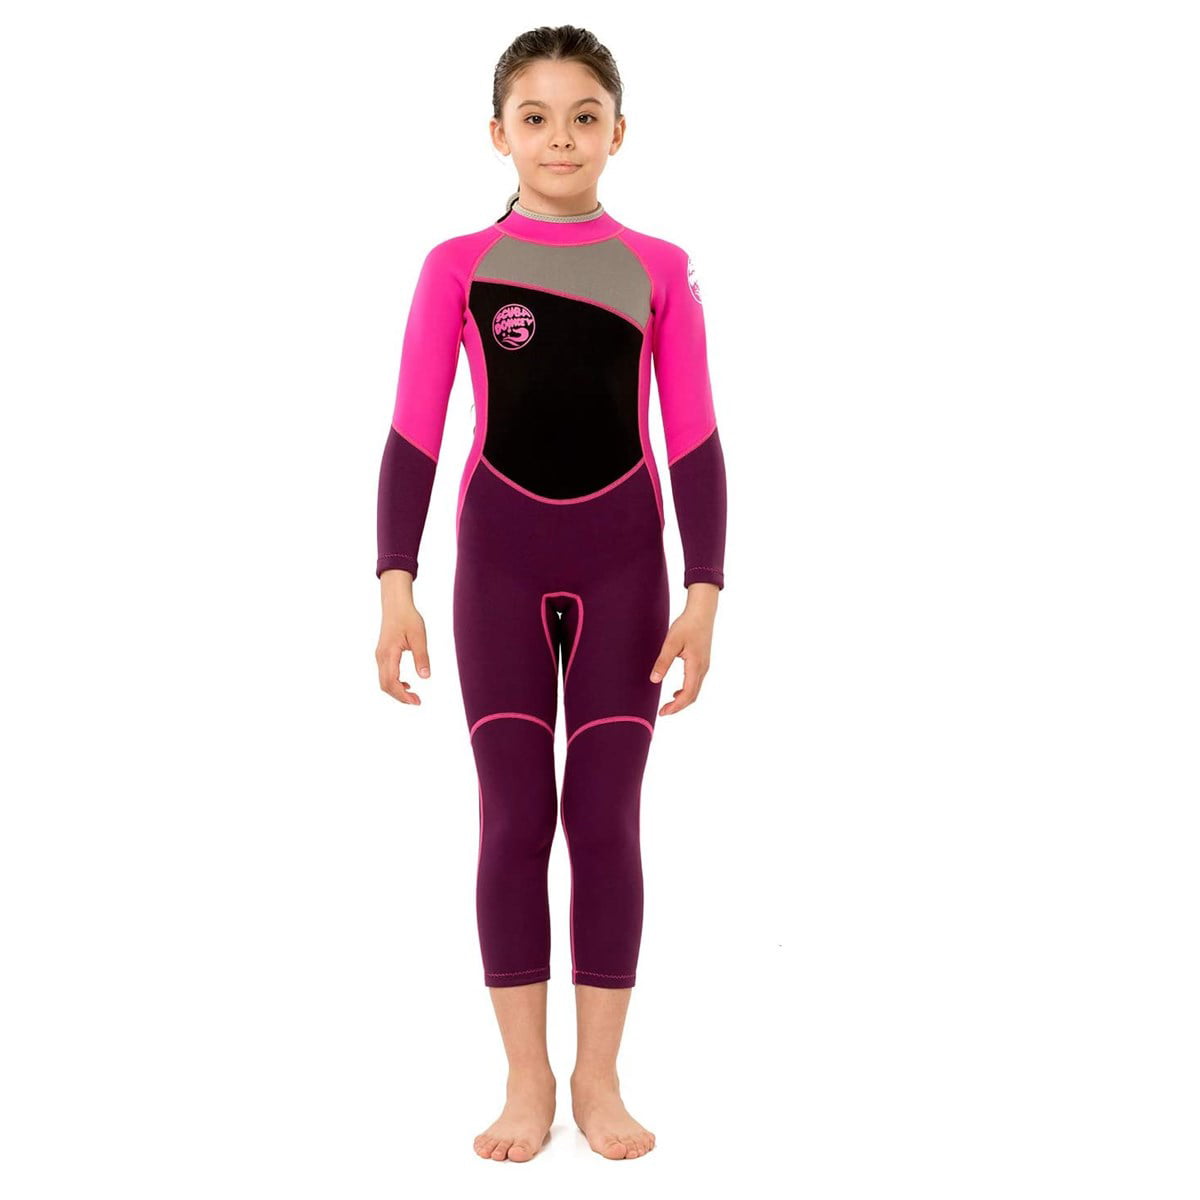 2.5mm Neoprene Full Length Wetsuit Kids Boys Girls Swim Scuba Kayak Diving Suit 